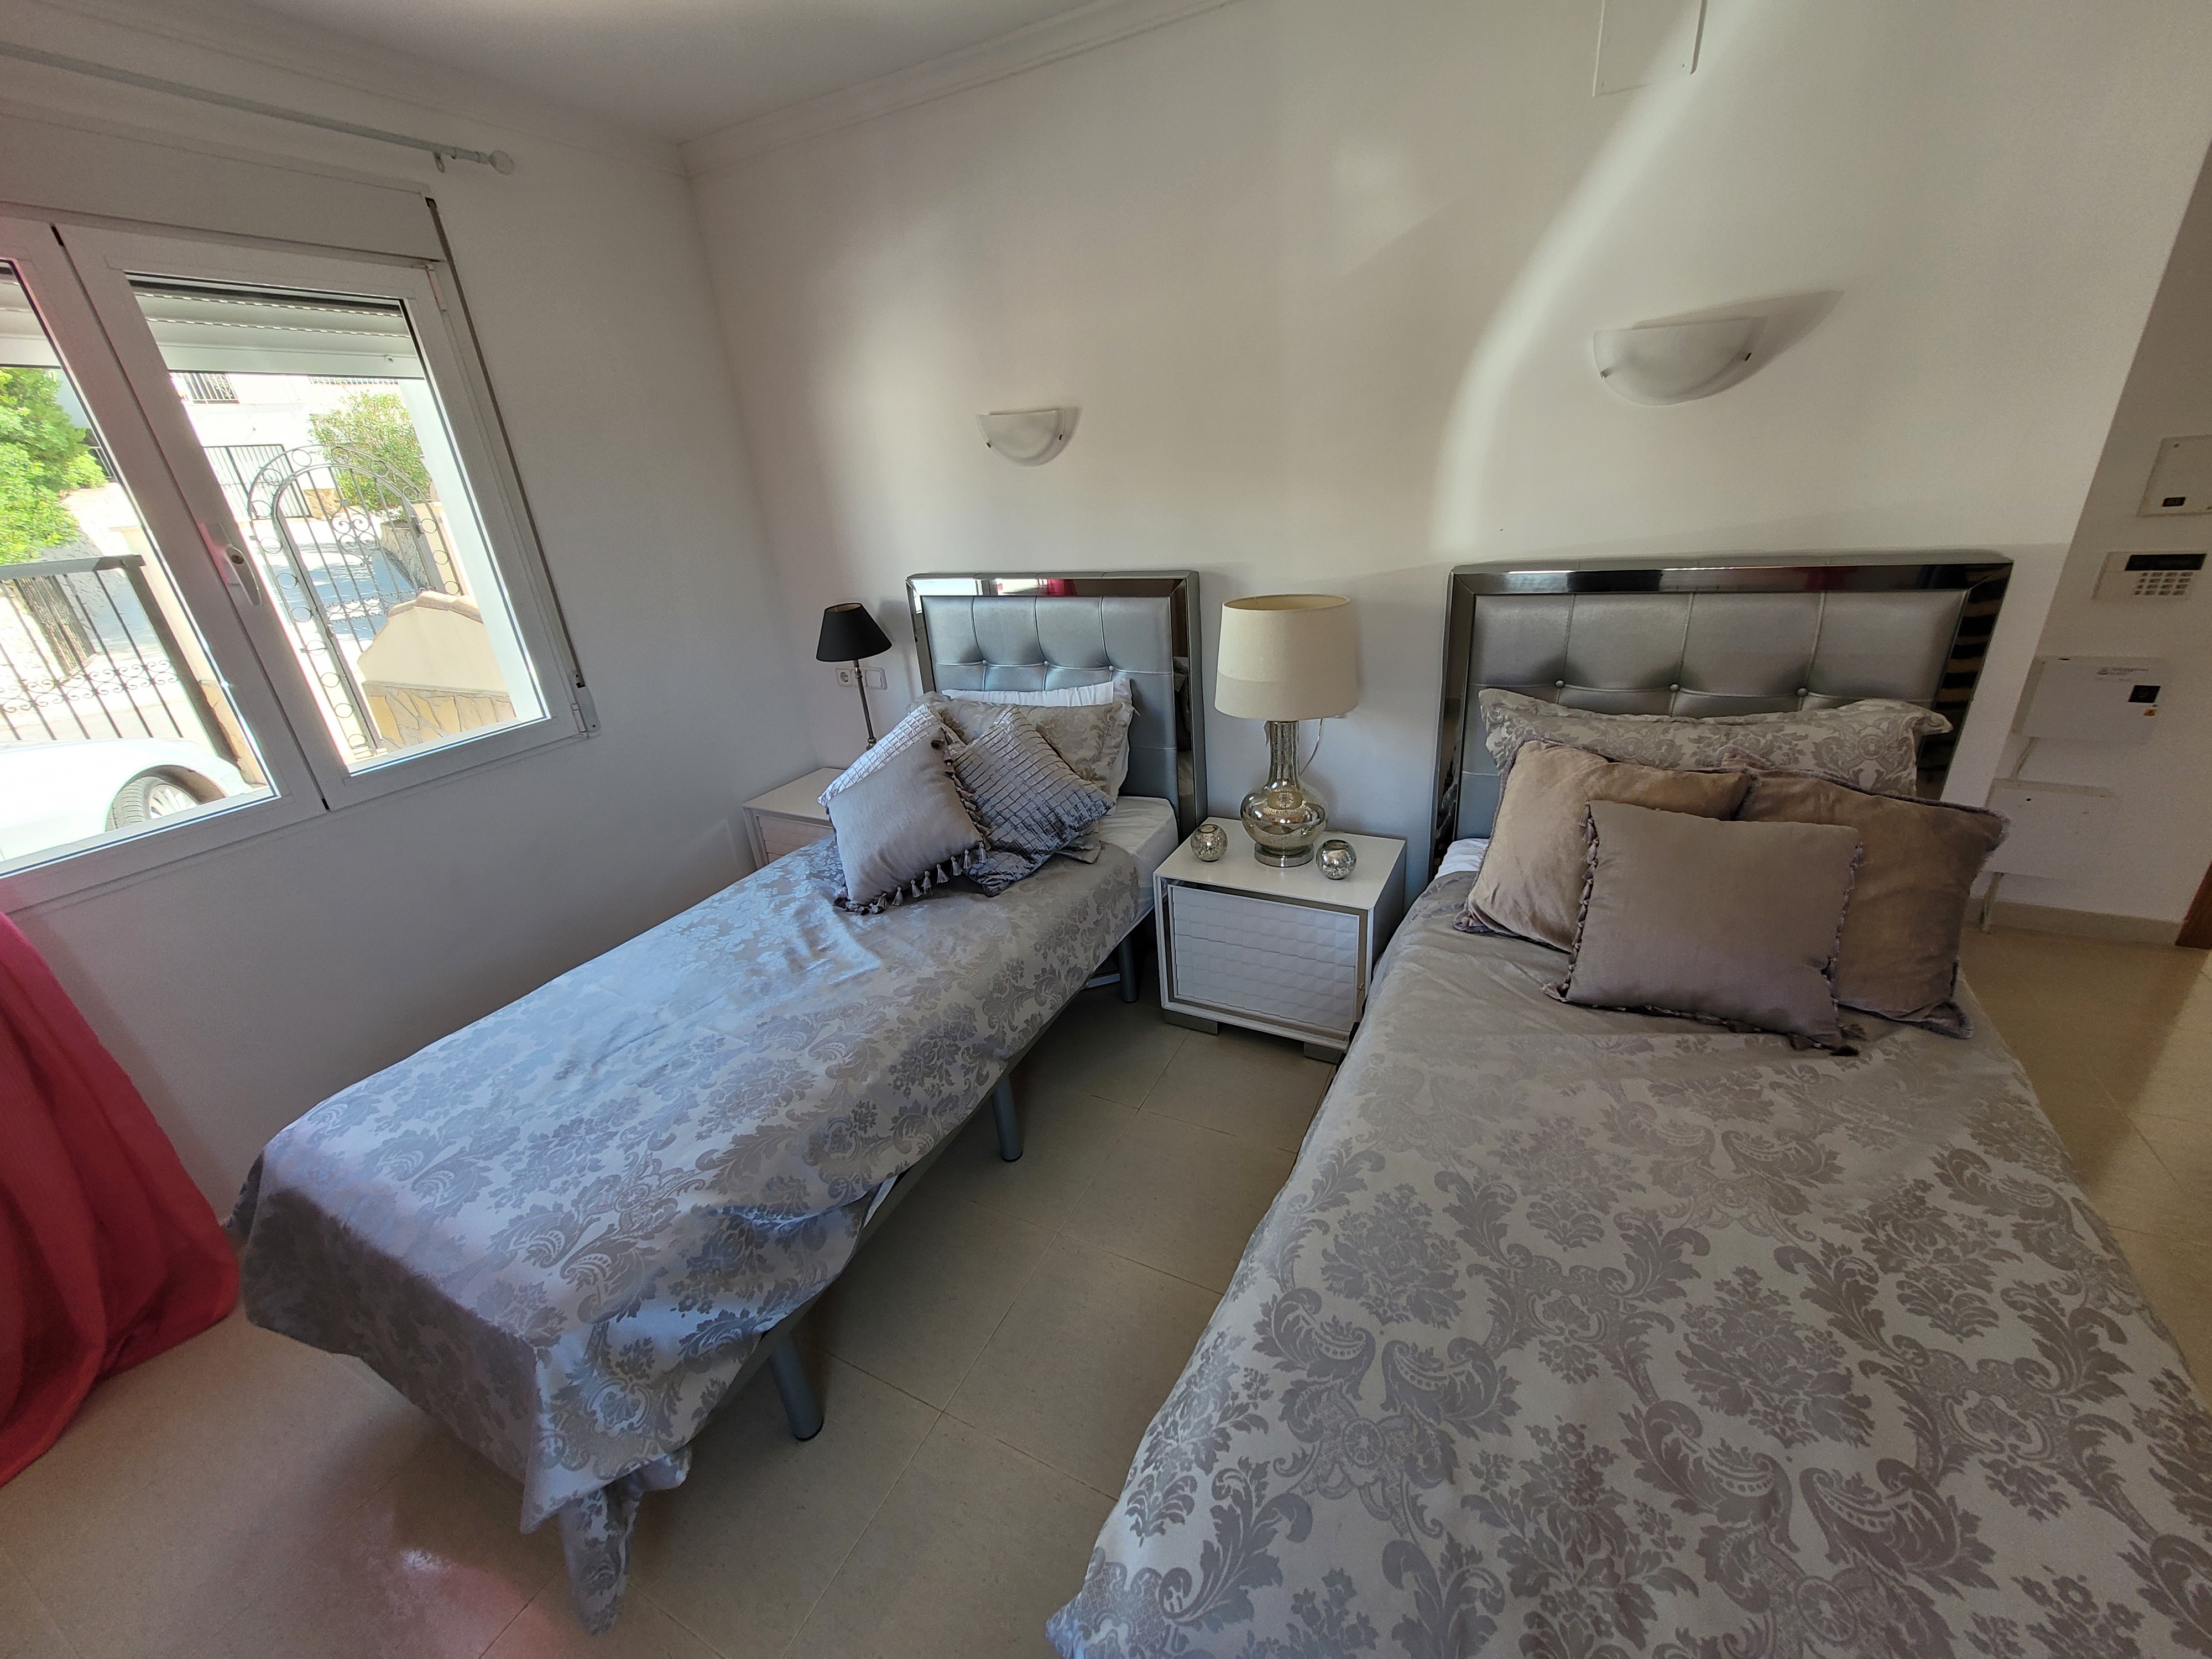 Villa de 5 camas en venta en parque natural de Granadella con impresionantes vistas en venta